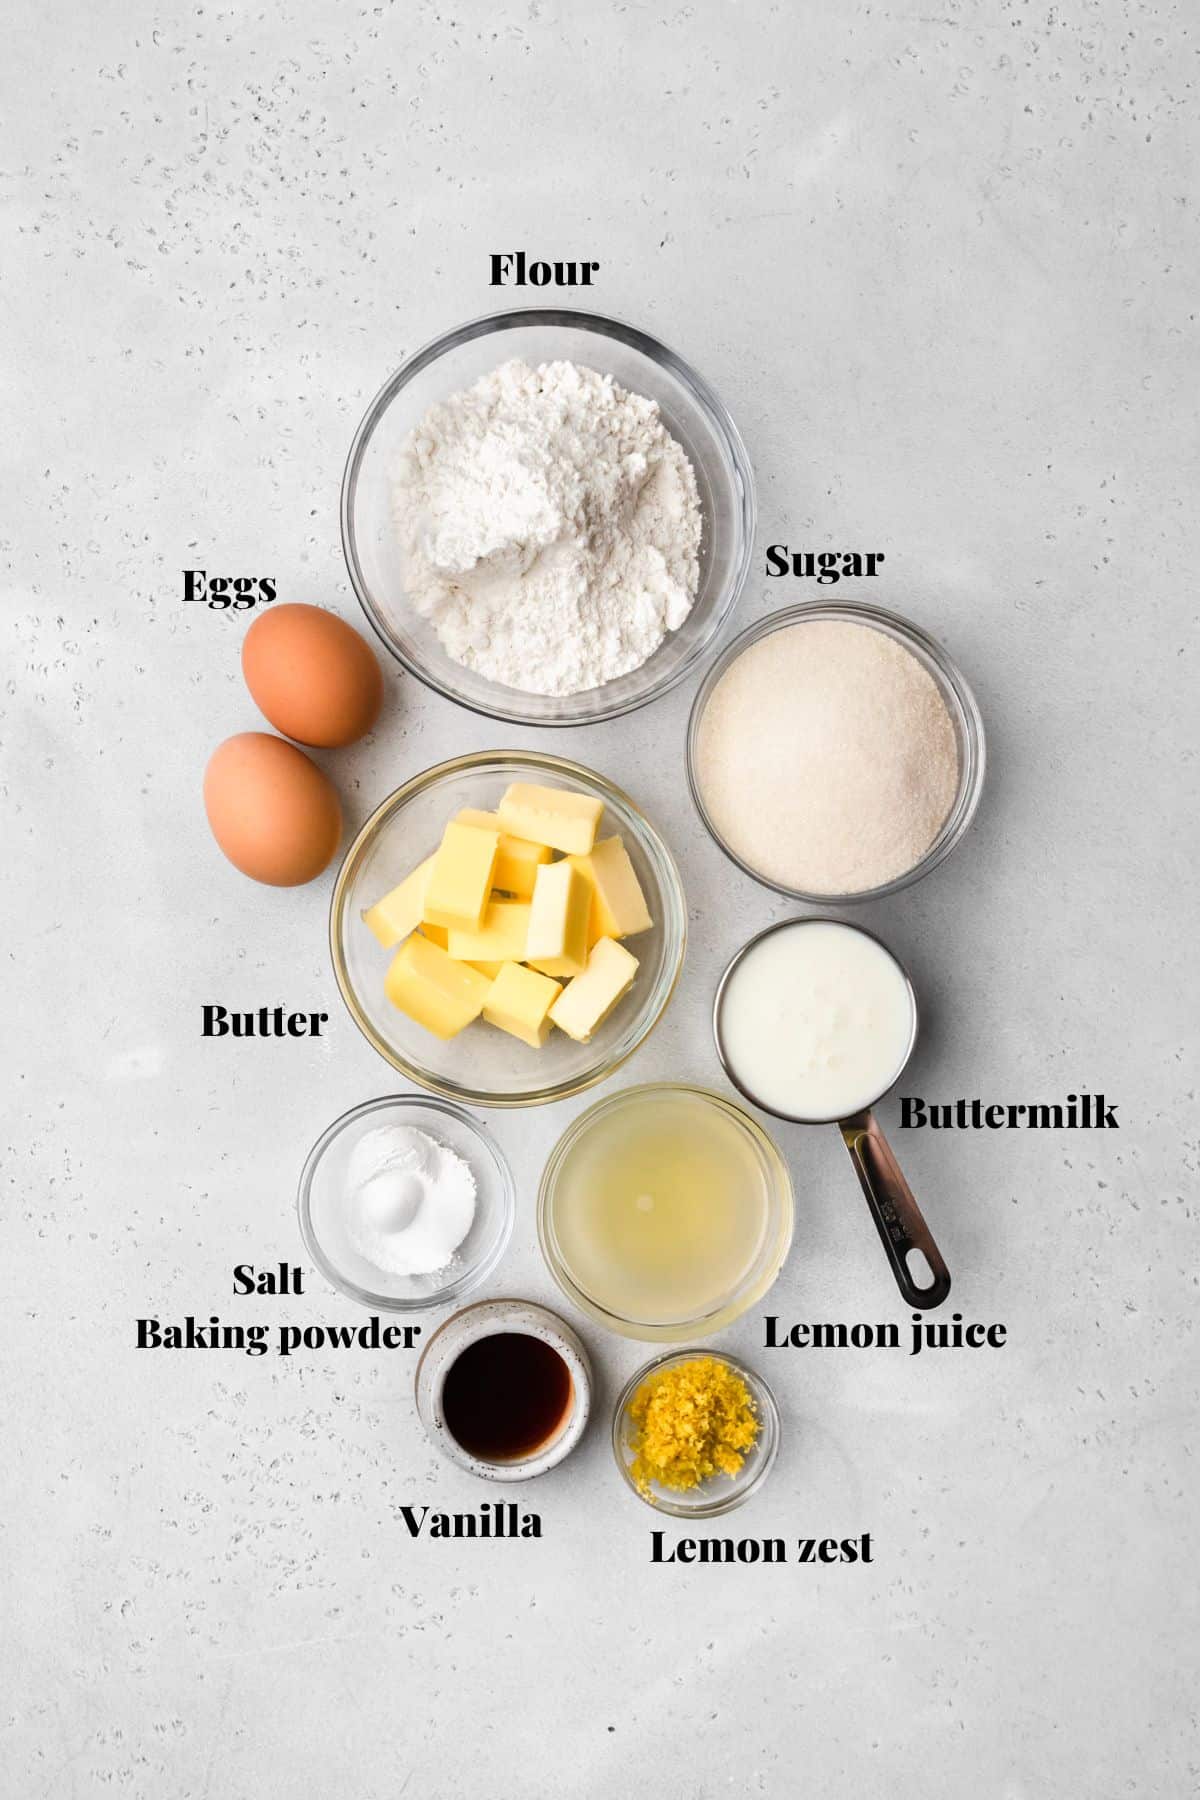 Ingredients to make lemon lavender cupcakes.